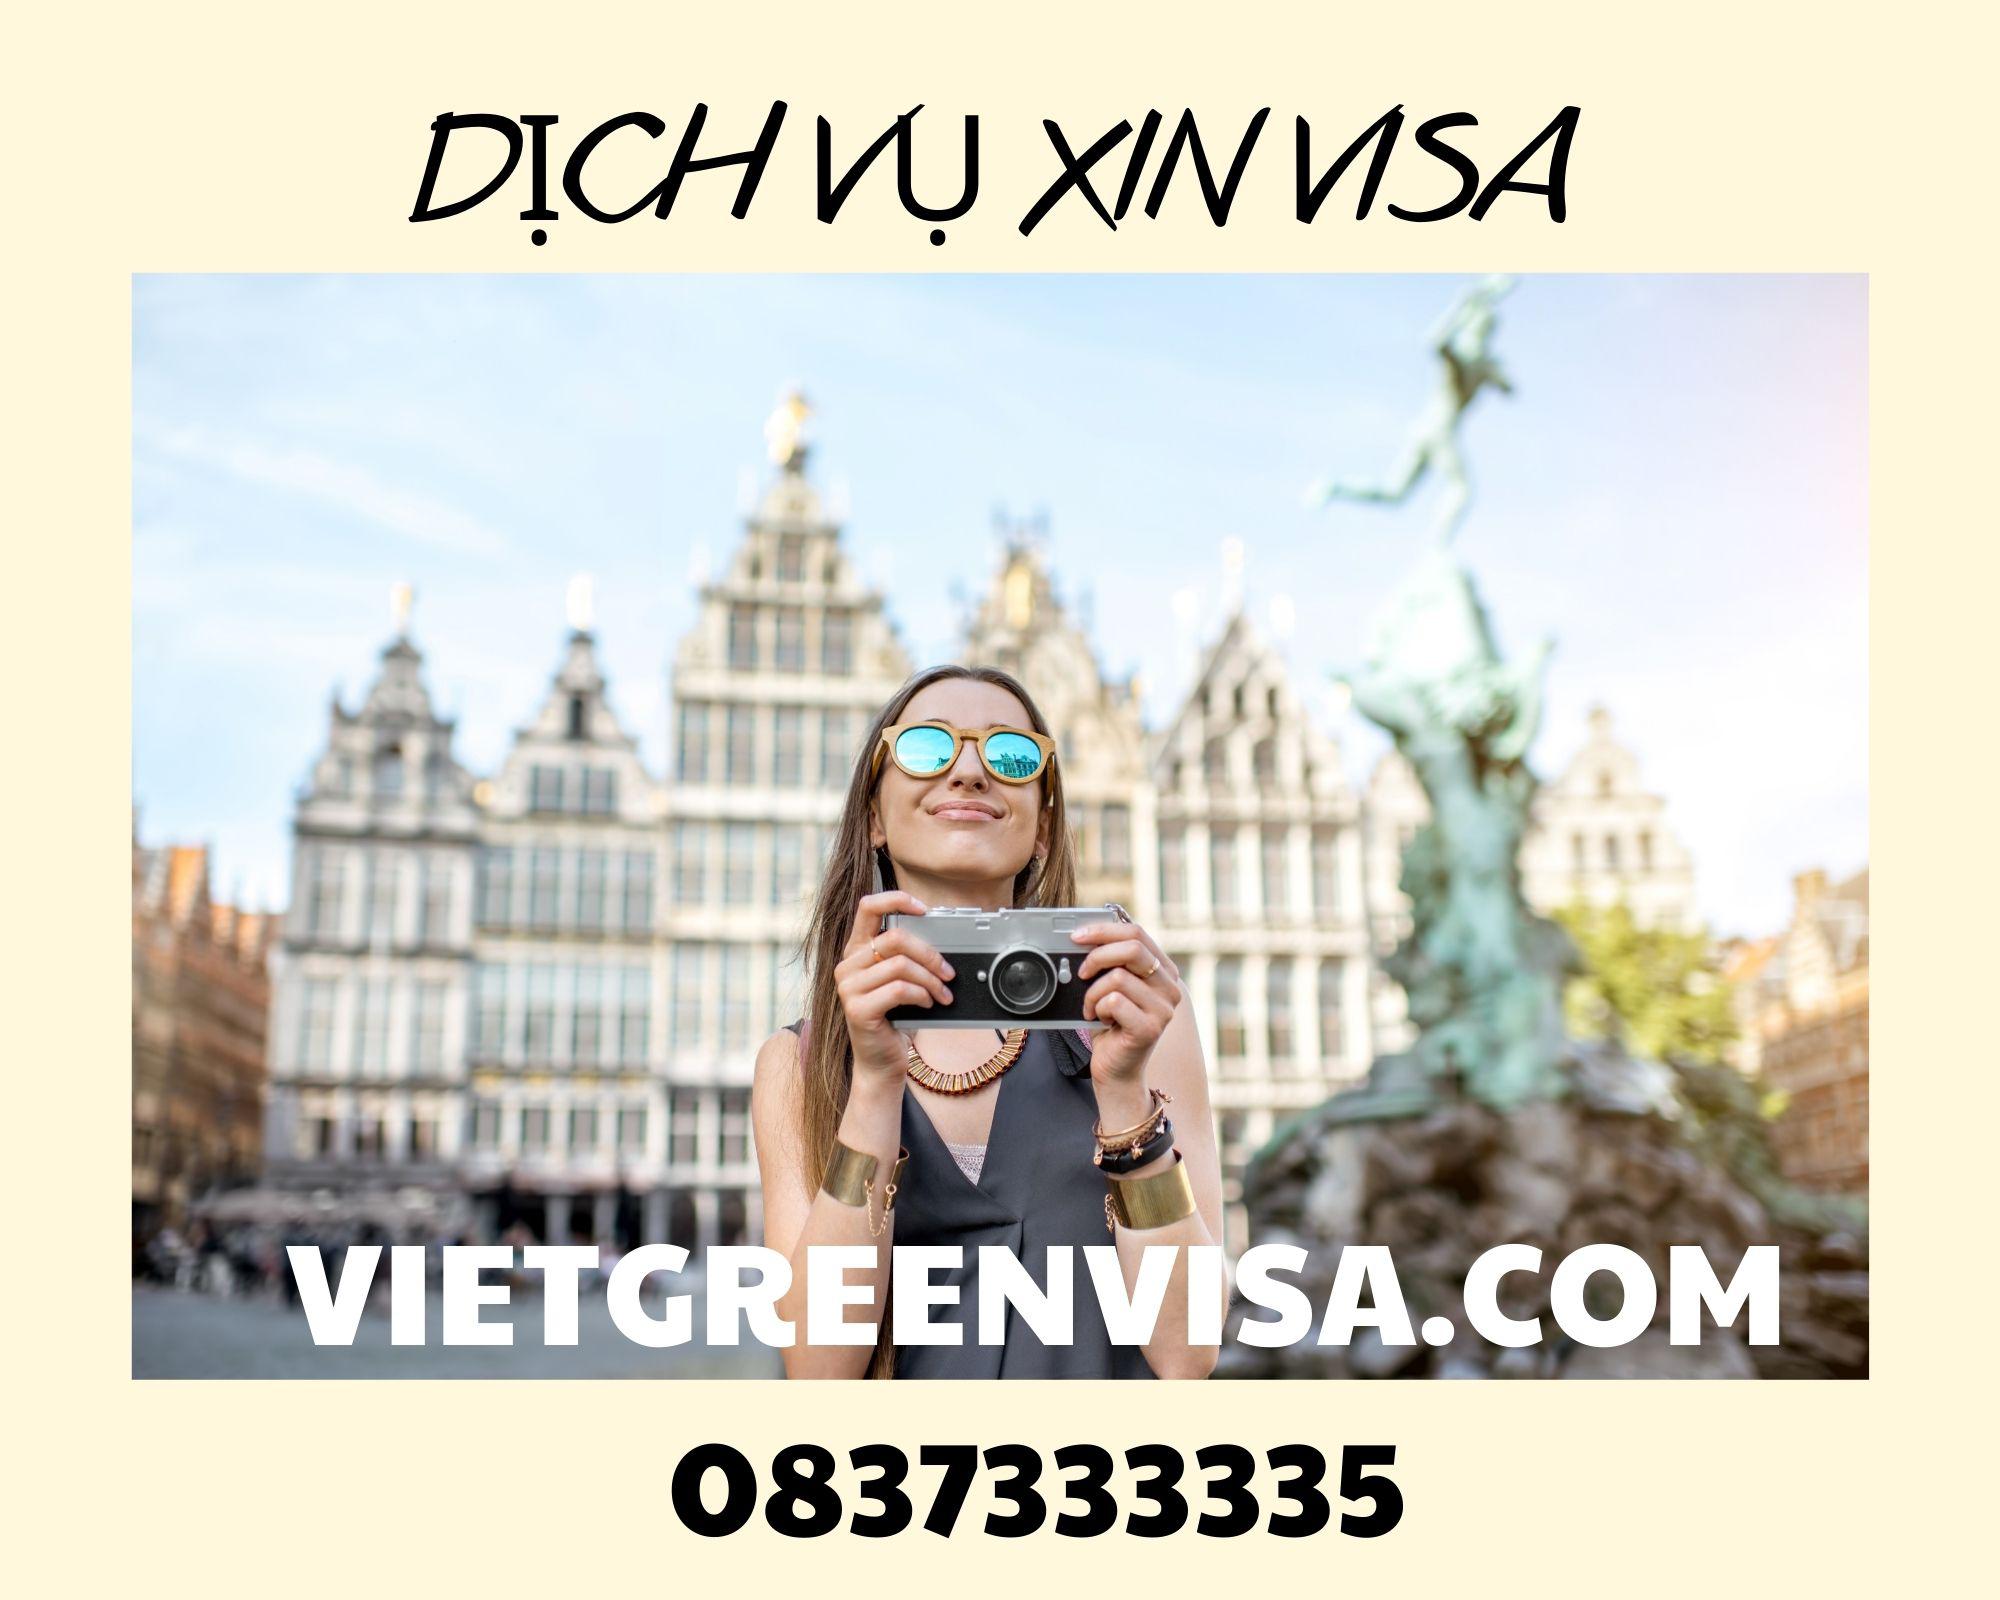 Hỗ trợ xin visa du lịch Bỉ trọn gói tại Viet Green Visa